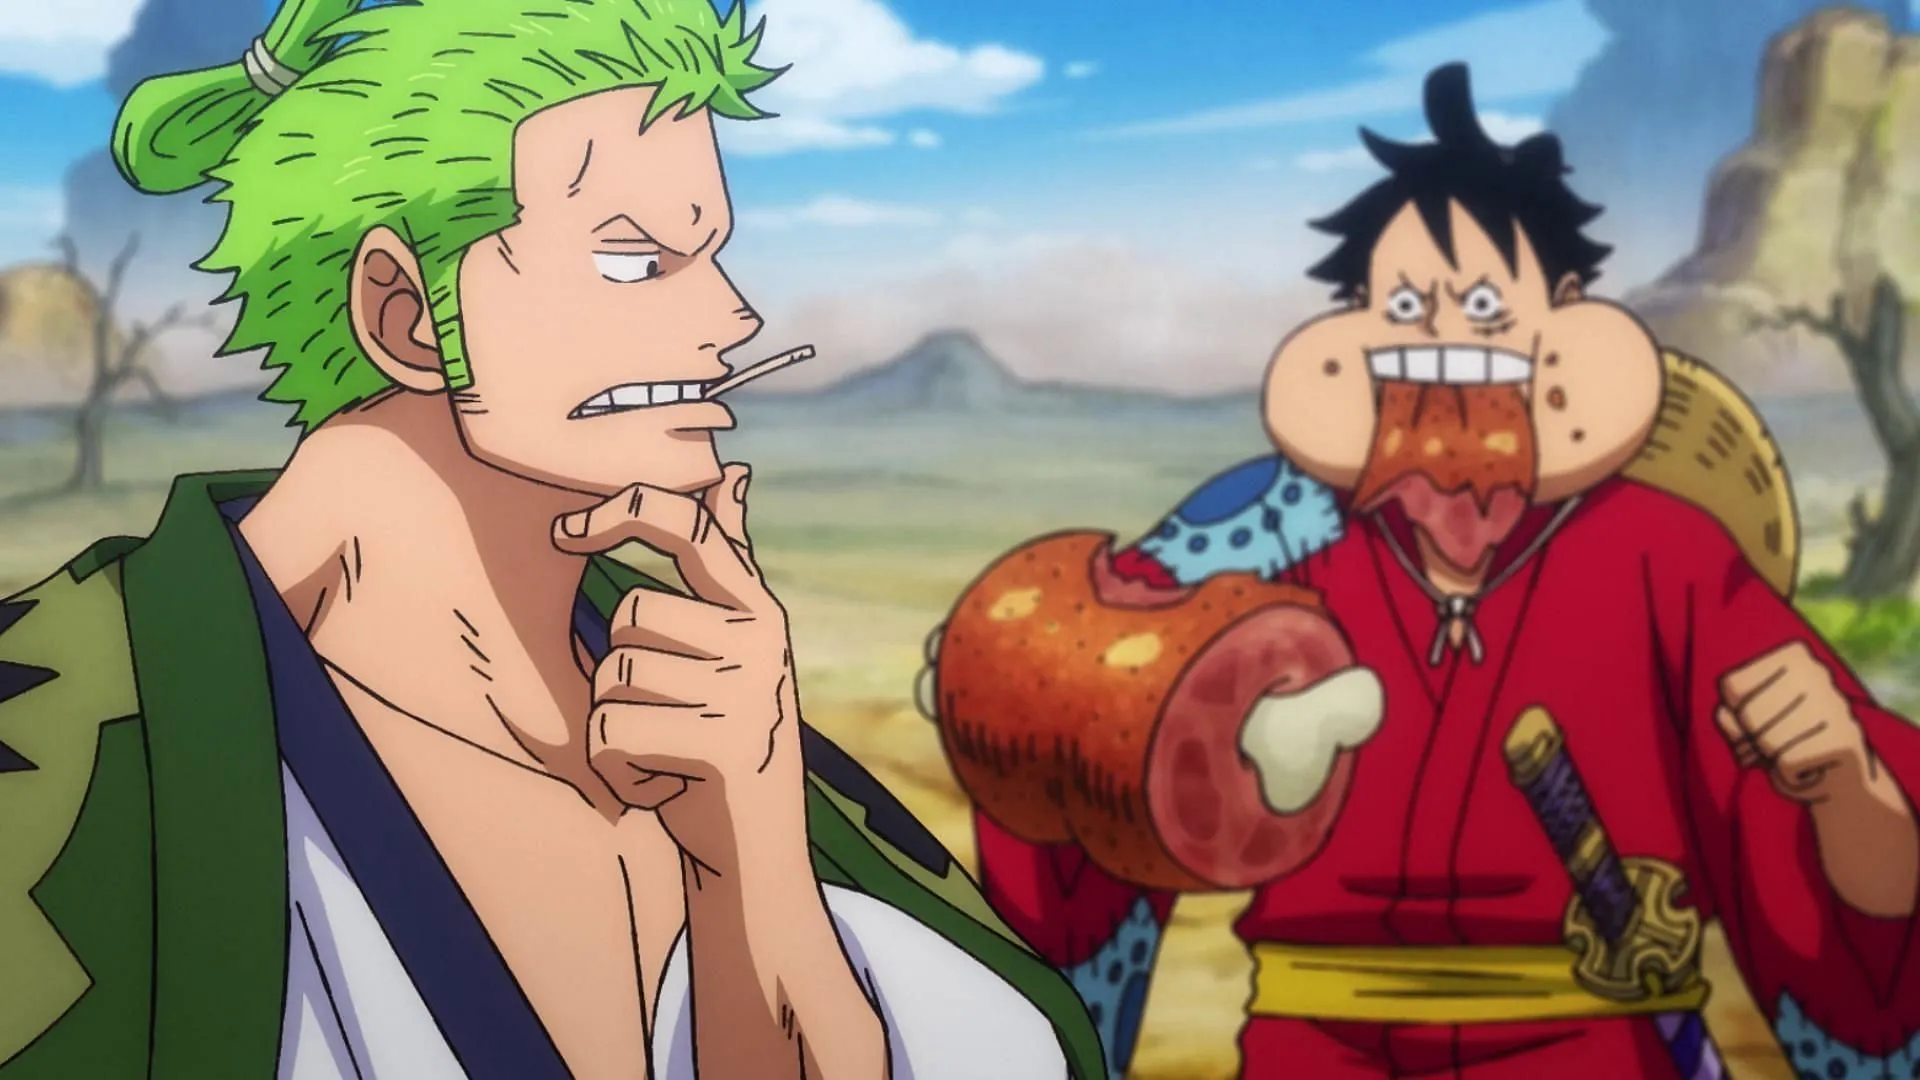 Interakcje Luffy'ego i Zoro są bezcenne (zdjęcie za pośrednictwem Toei Animation, One Piece)